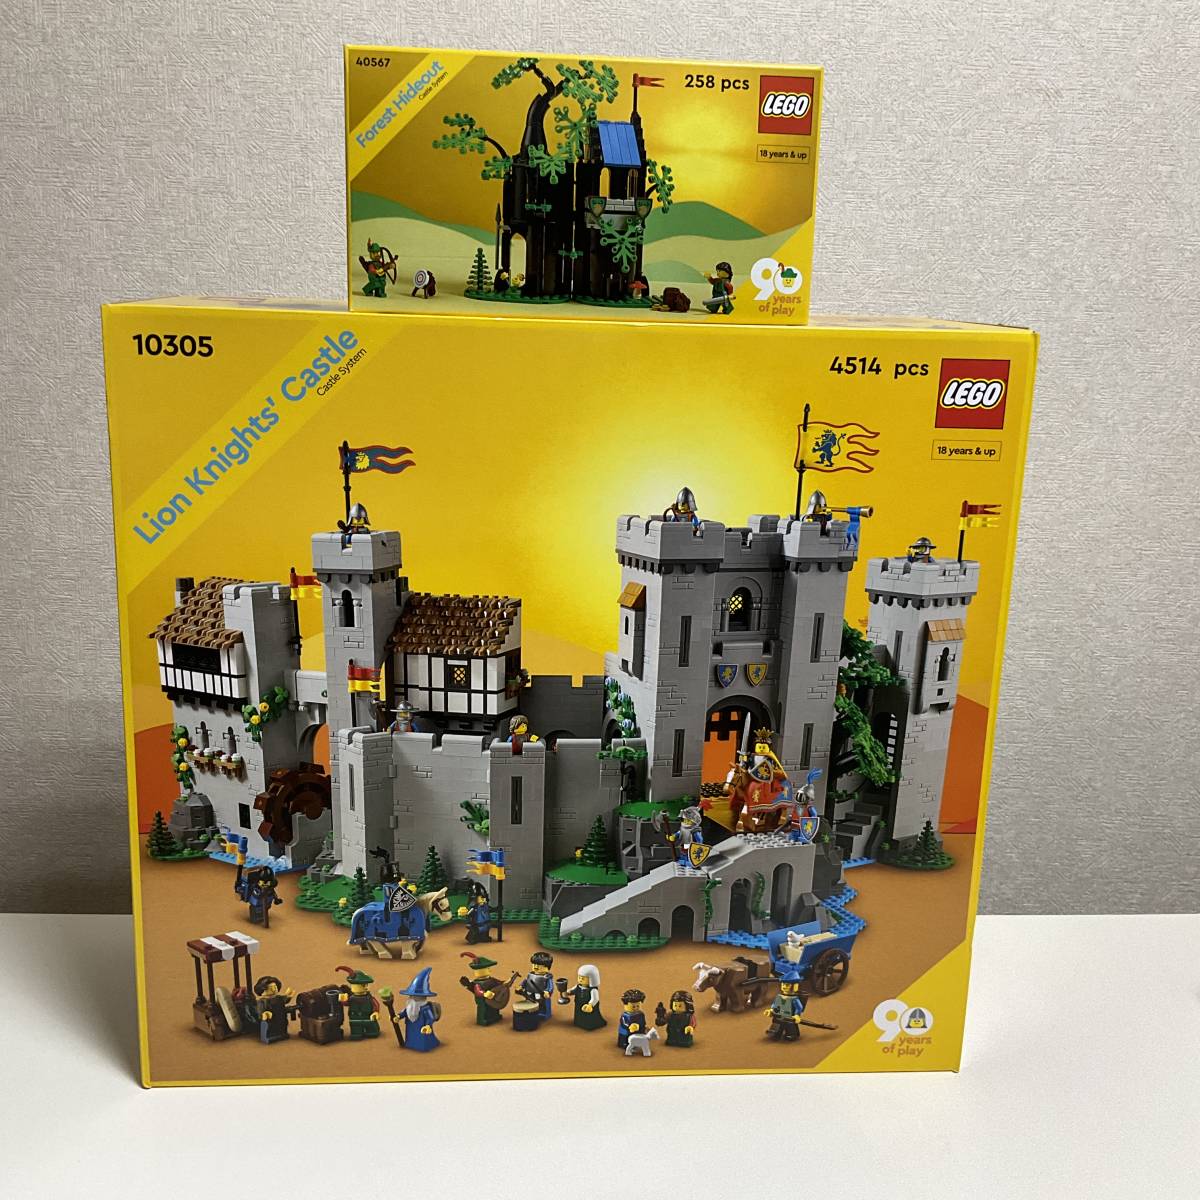 Dettagli dell'articolo LEGO ライオン騎士の城 10305(ジャンク品